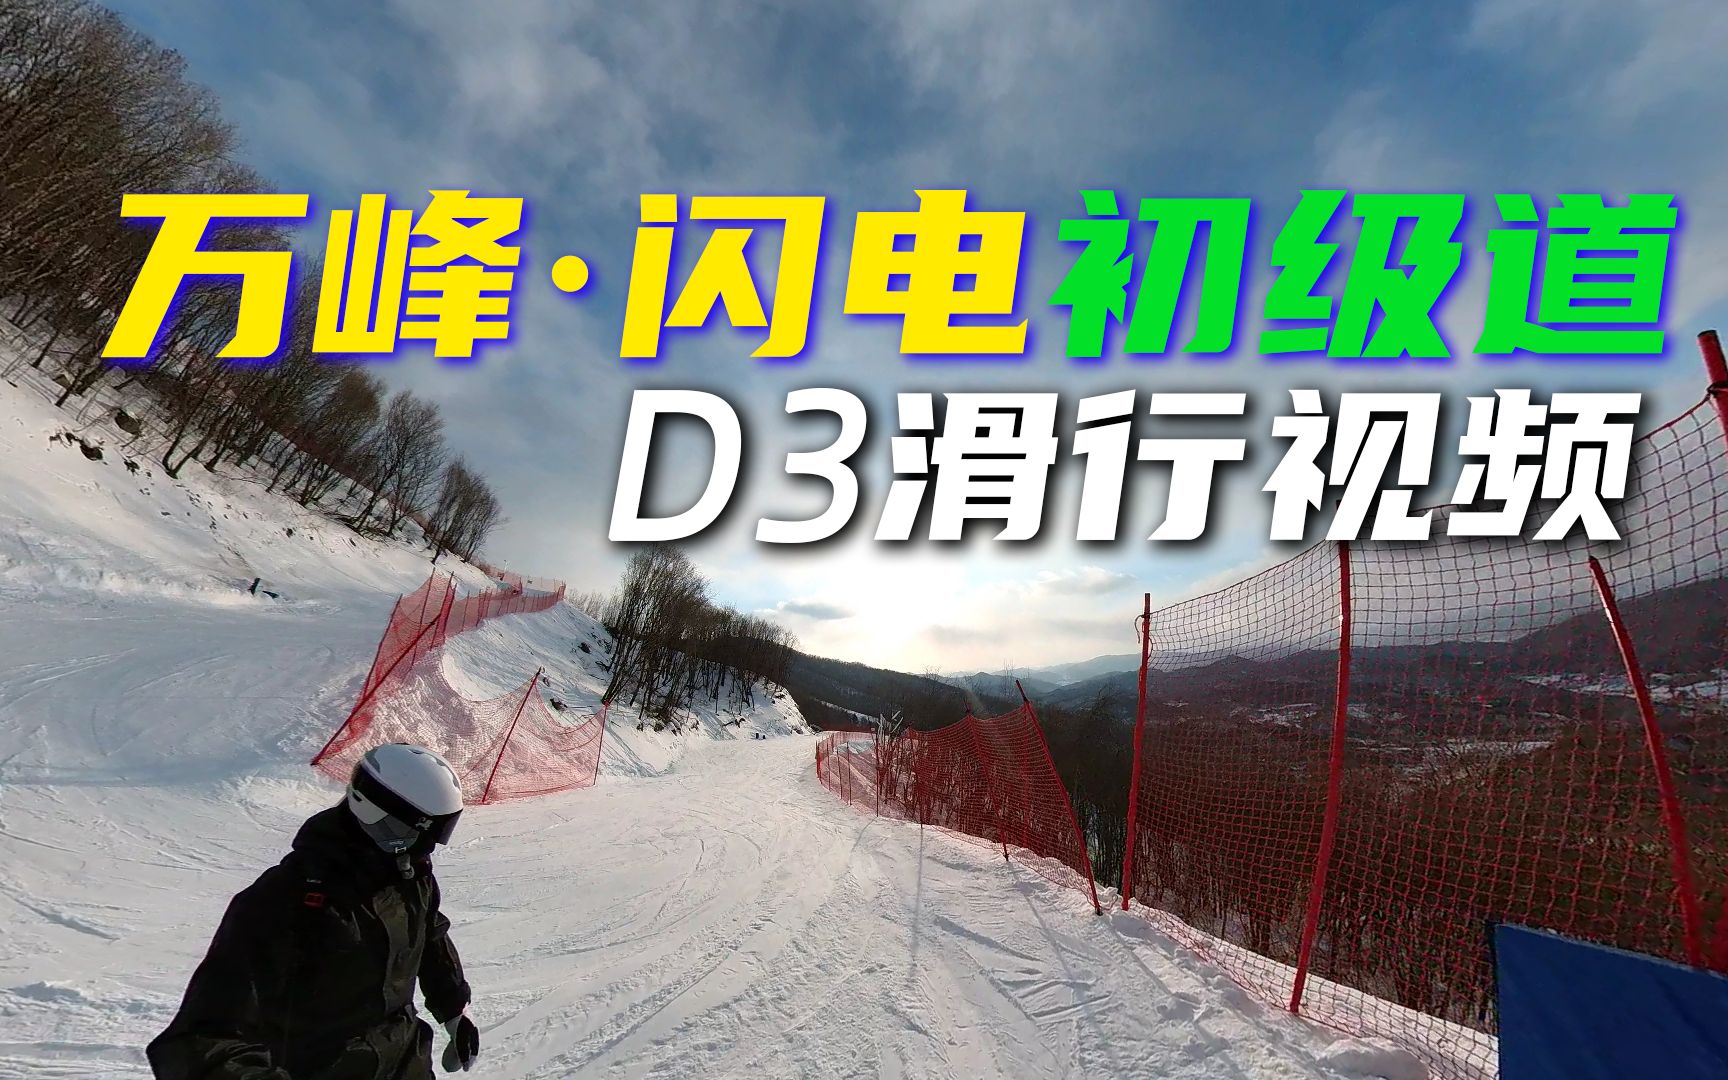 万峰闪电初级道 D3+E6雪道滑行视频  通化万峰滑雪场